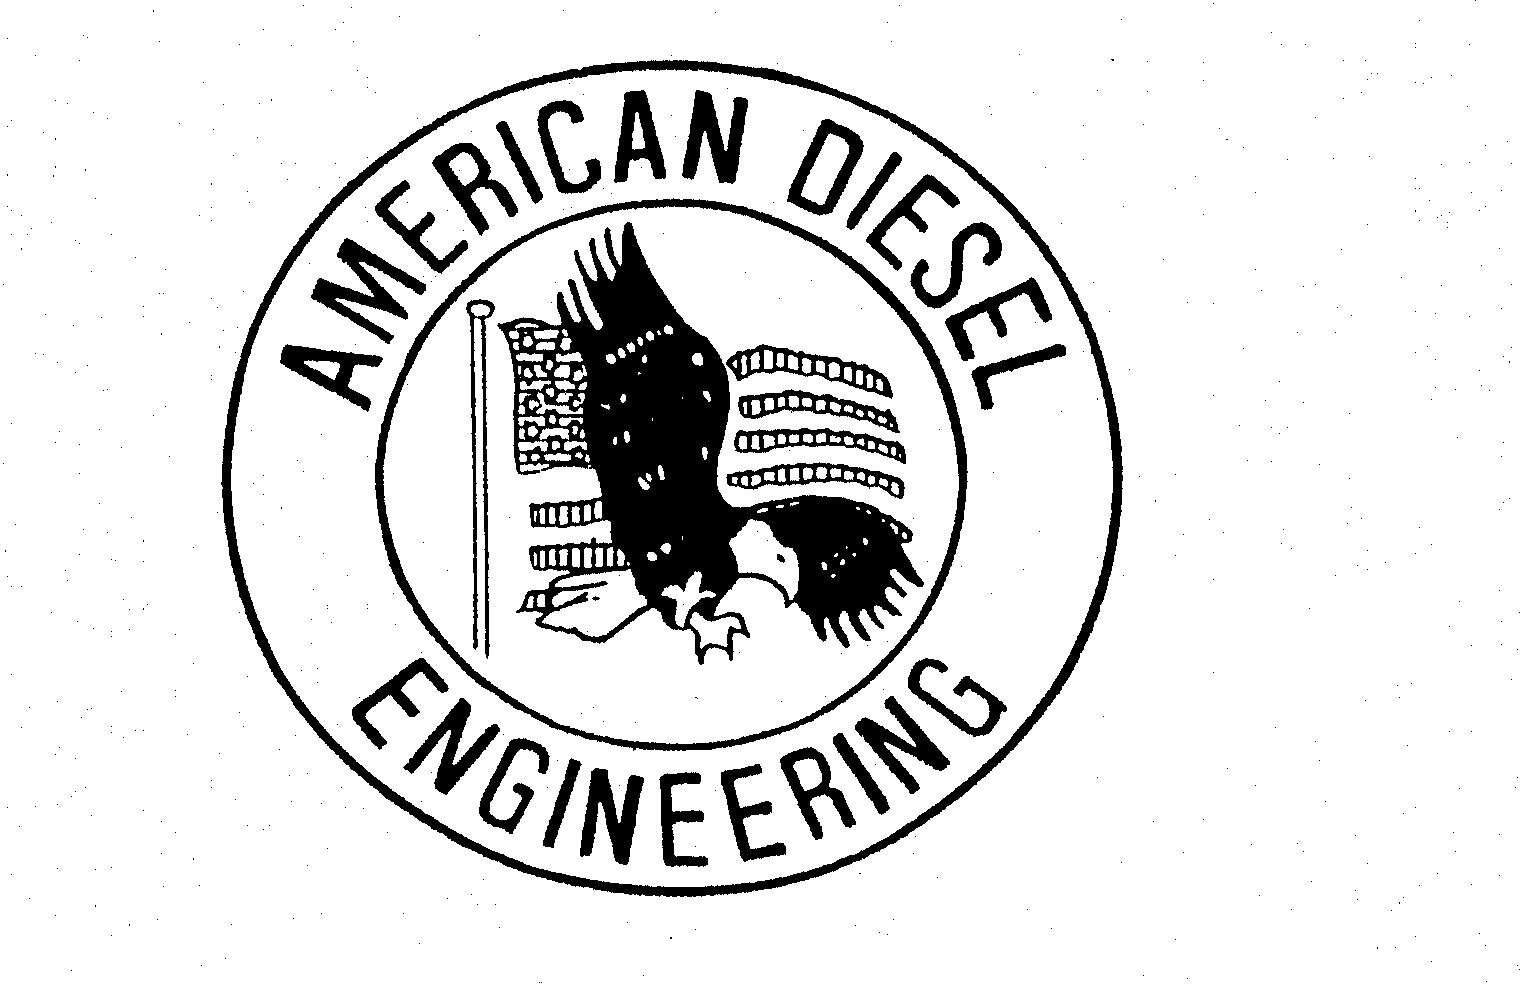  AMERICAN DIESEL ENGINEERING